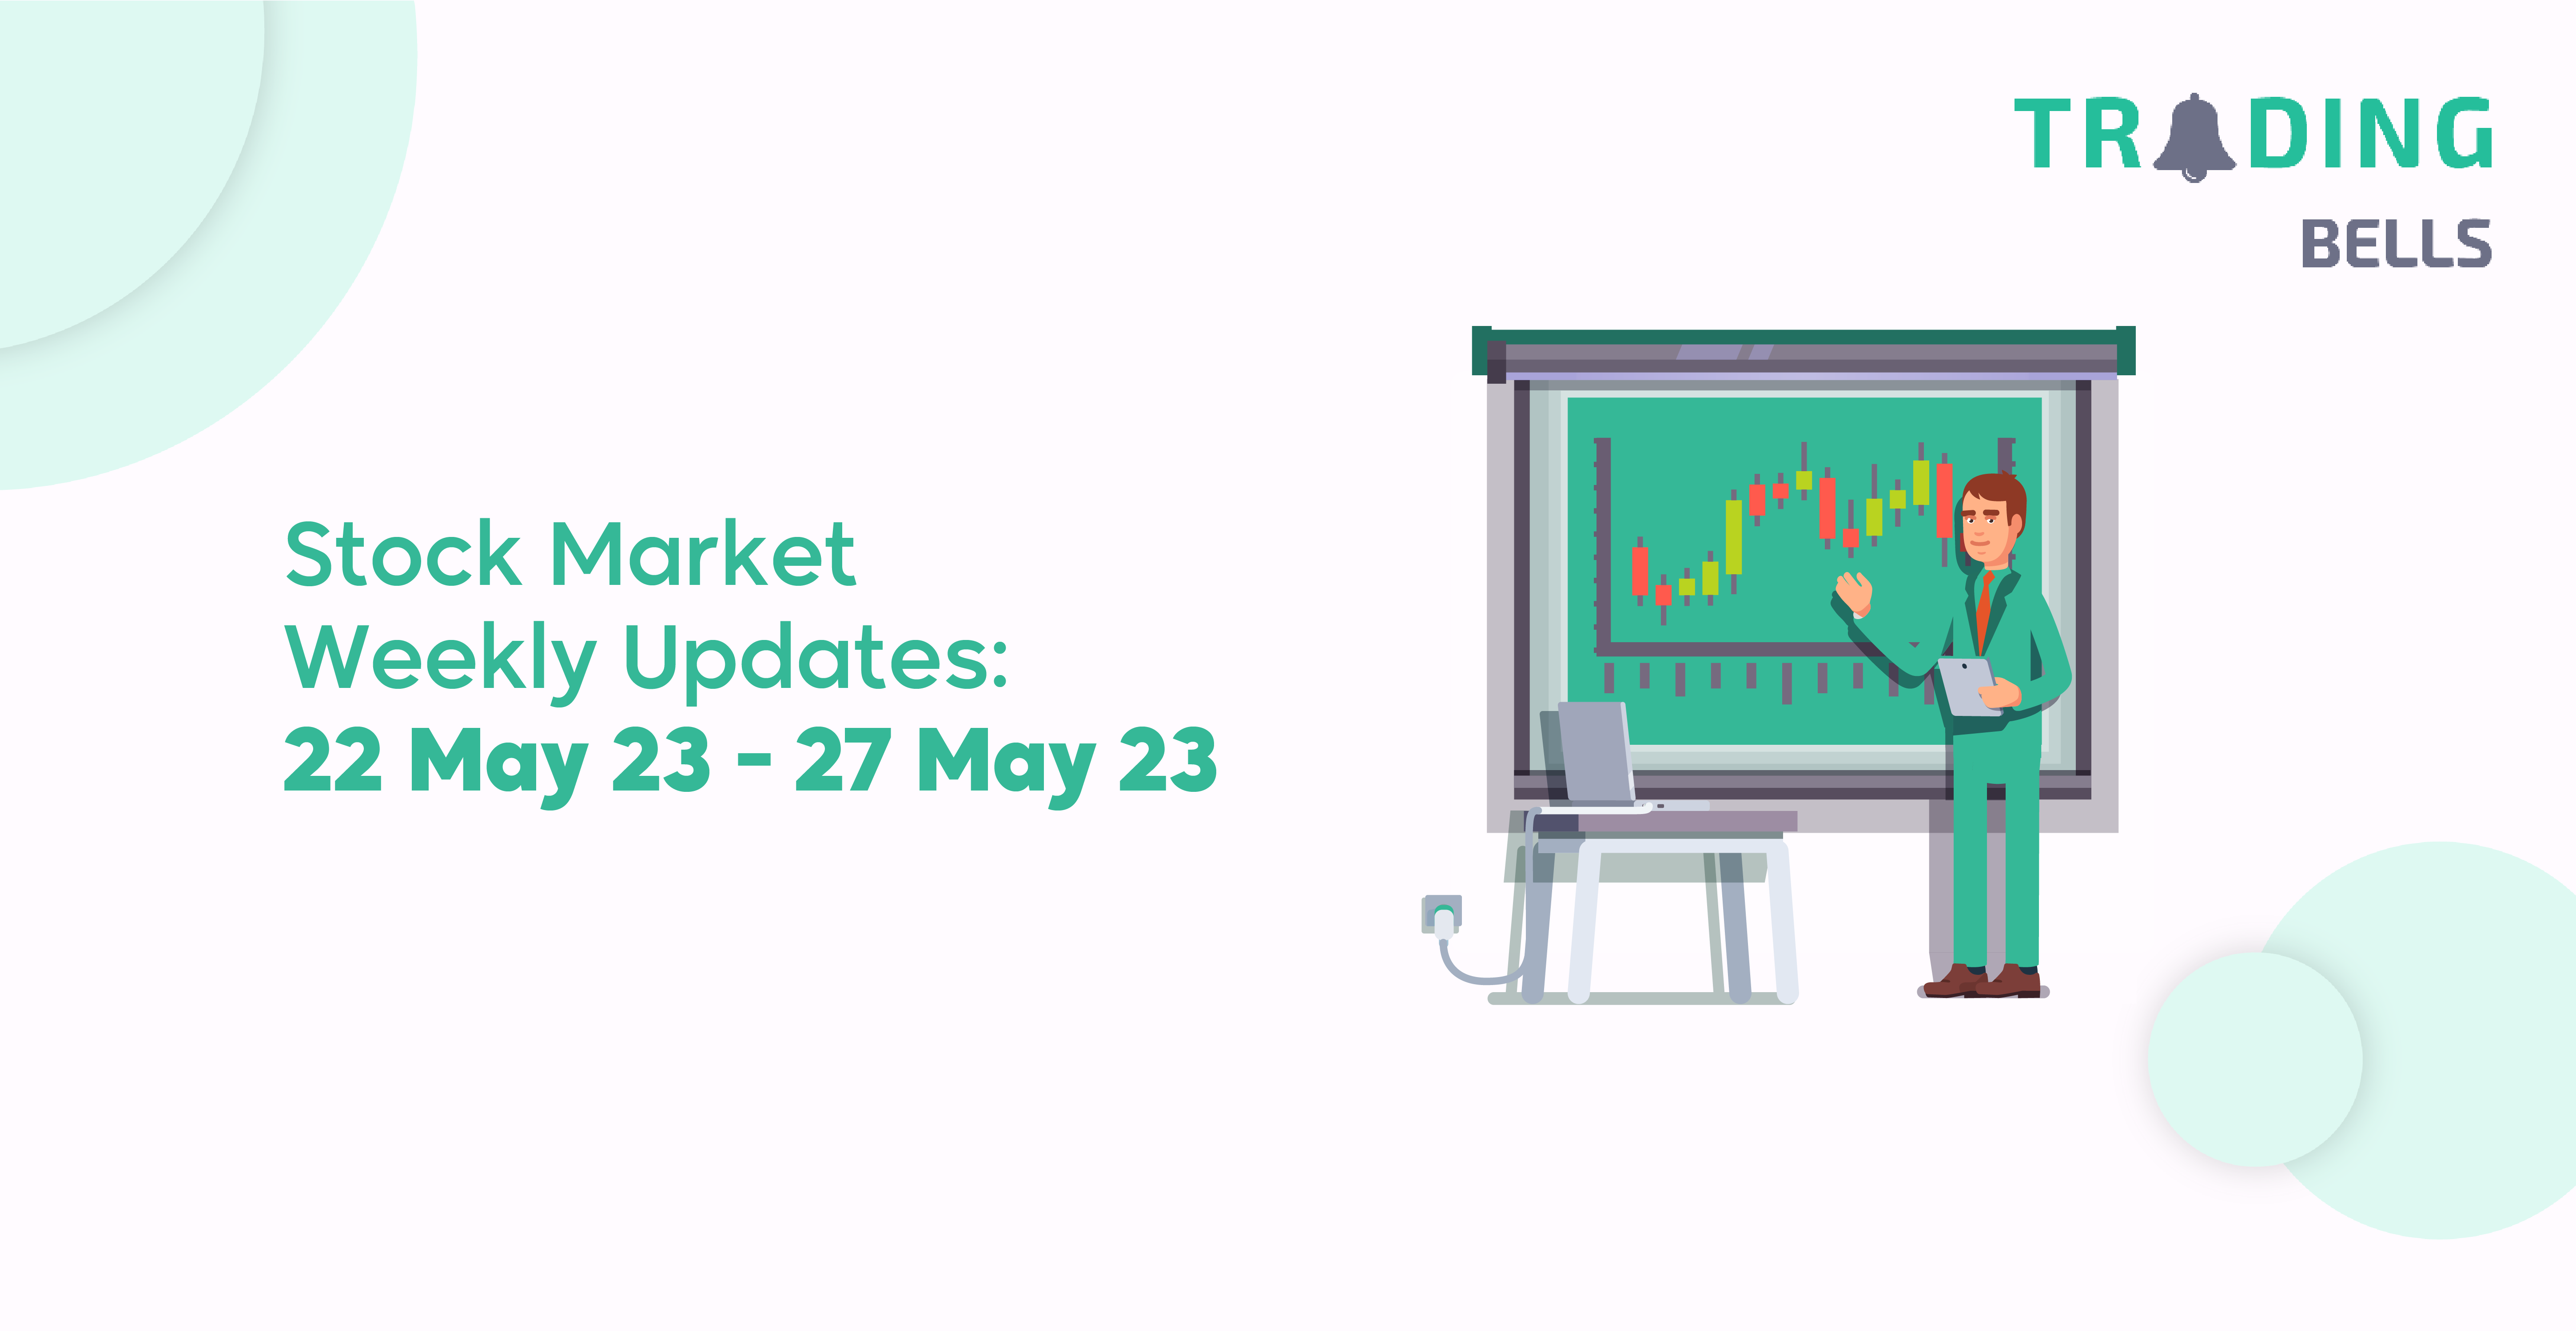 Stock Market Weekly Updates: 22 May 23 - 27 May 23 